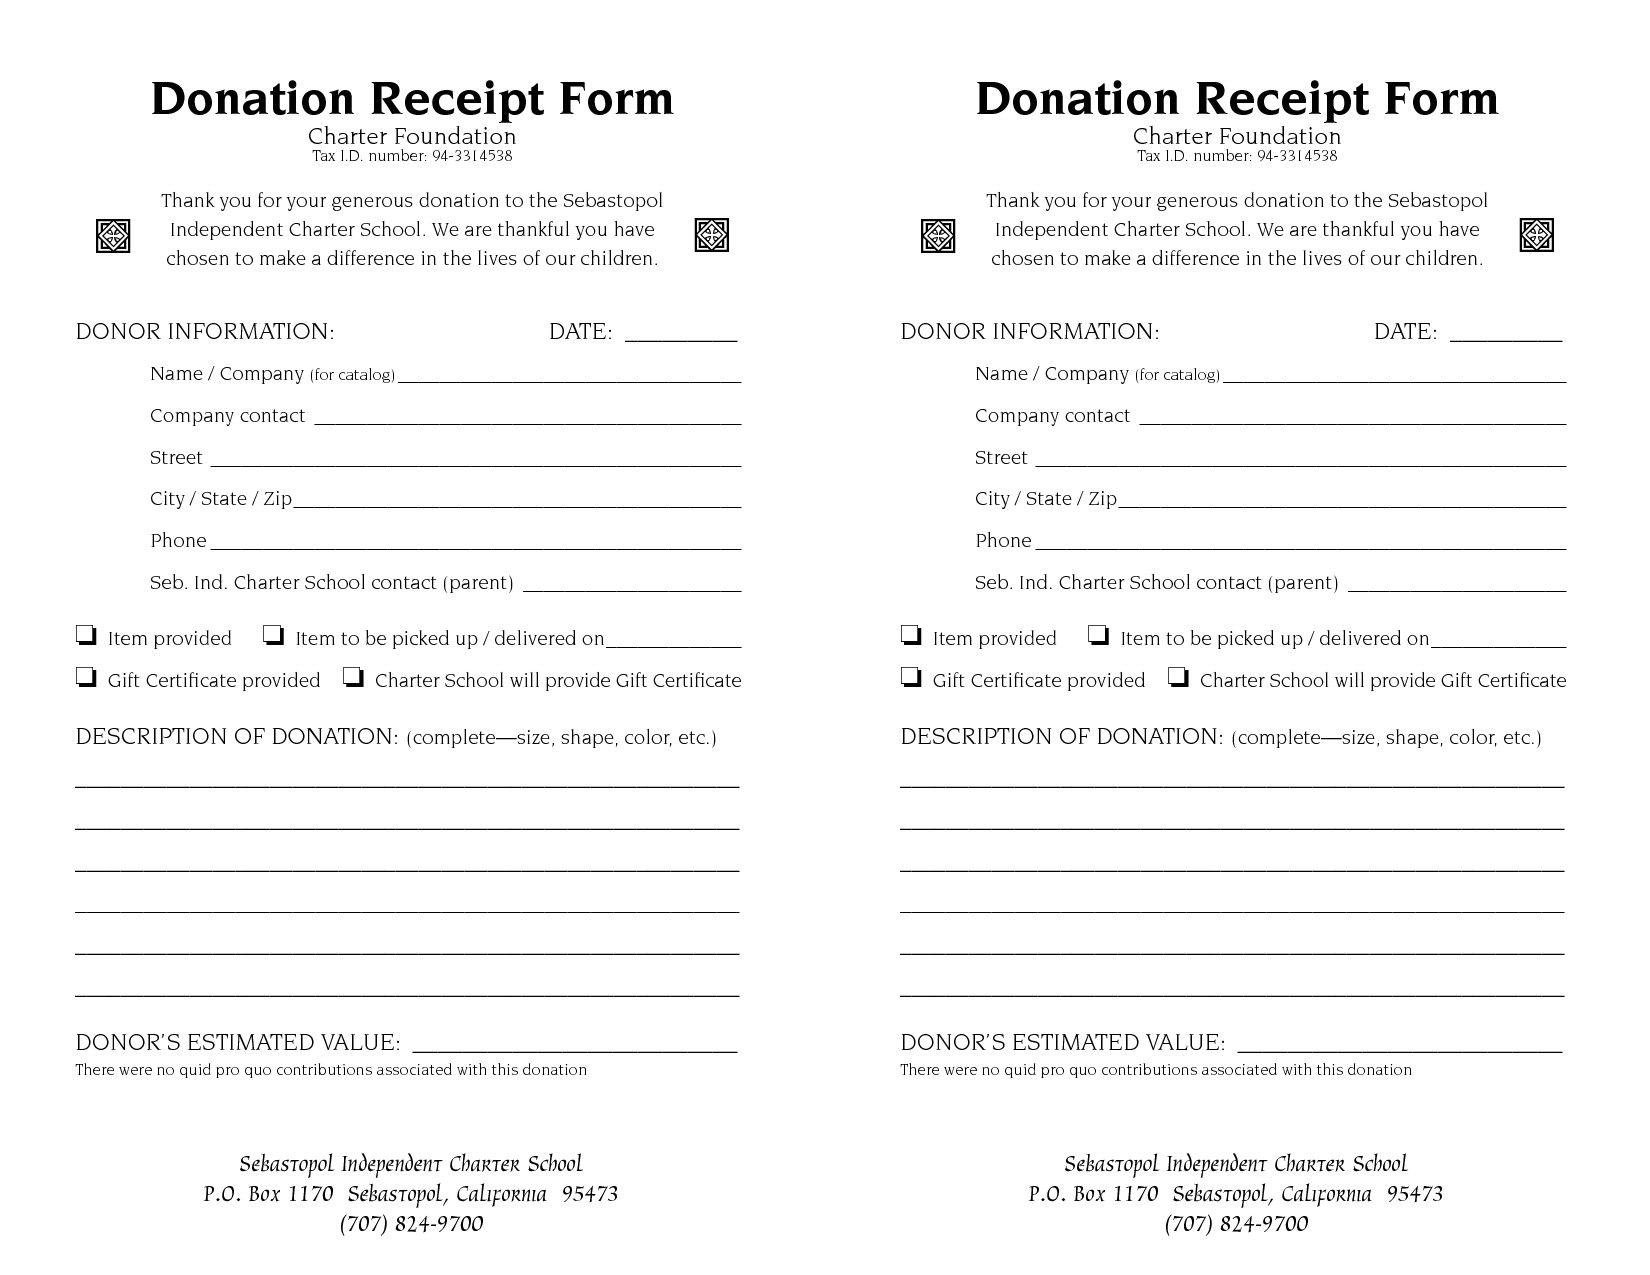 post non profit donation receipt form 99503